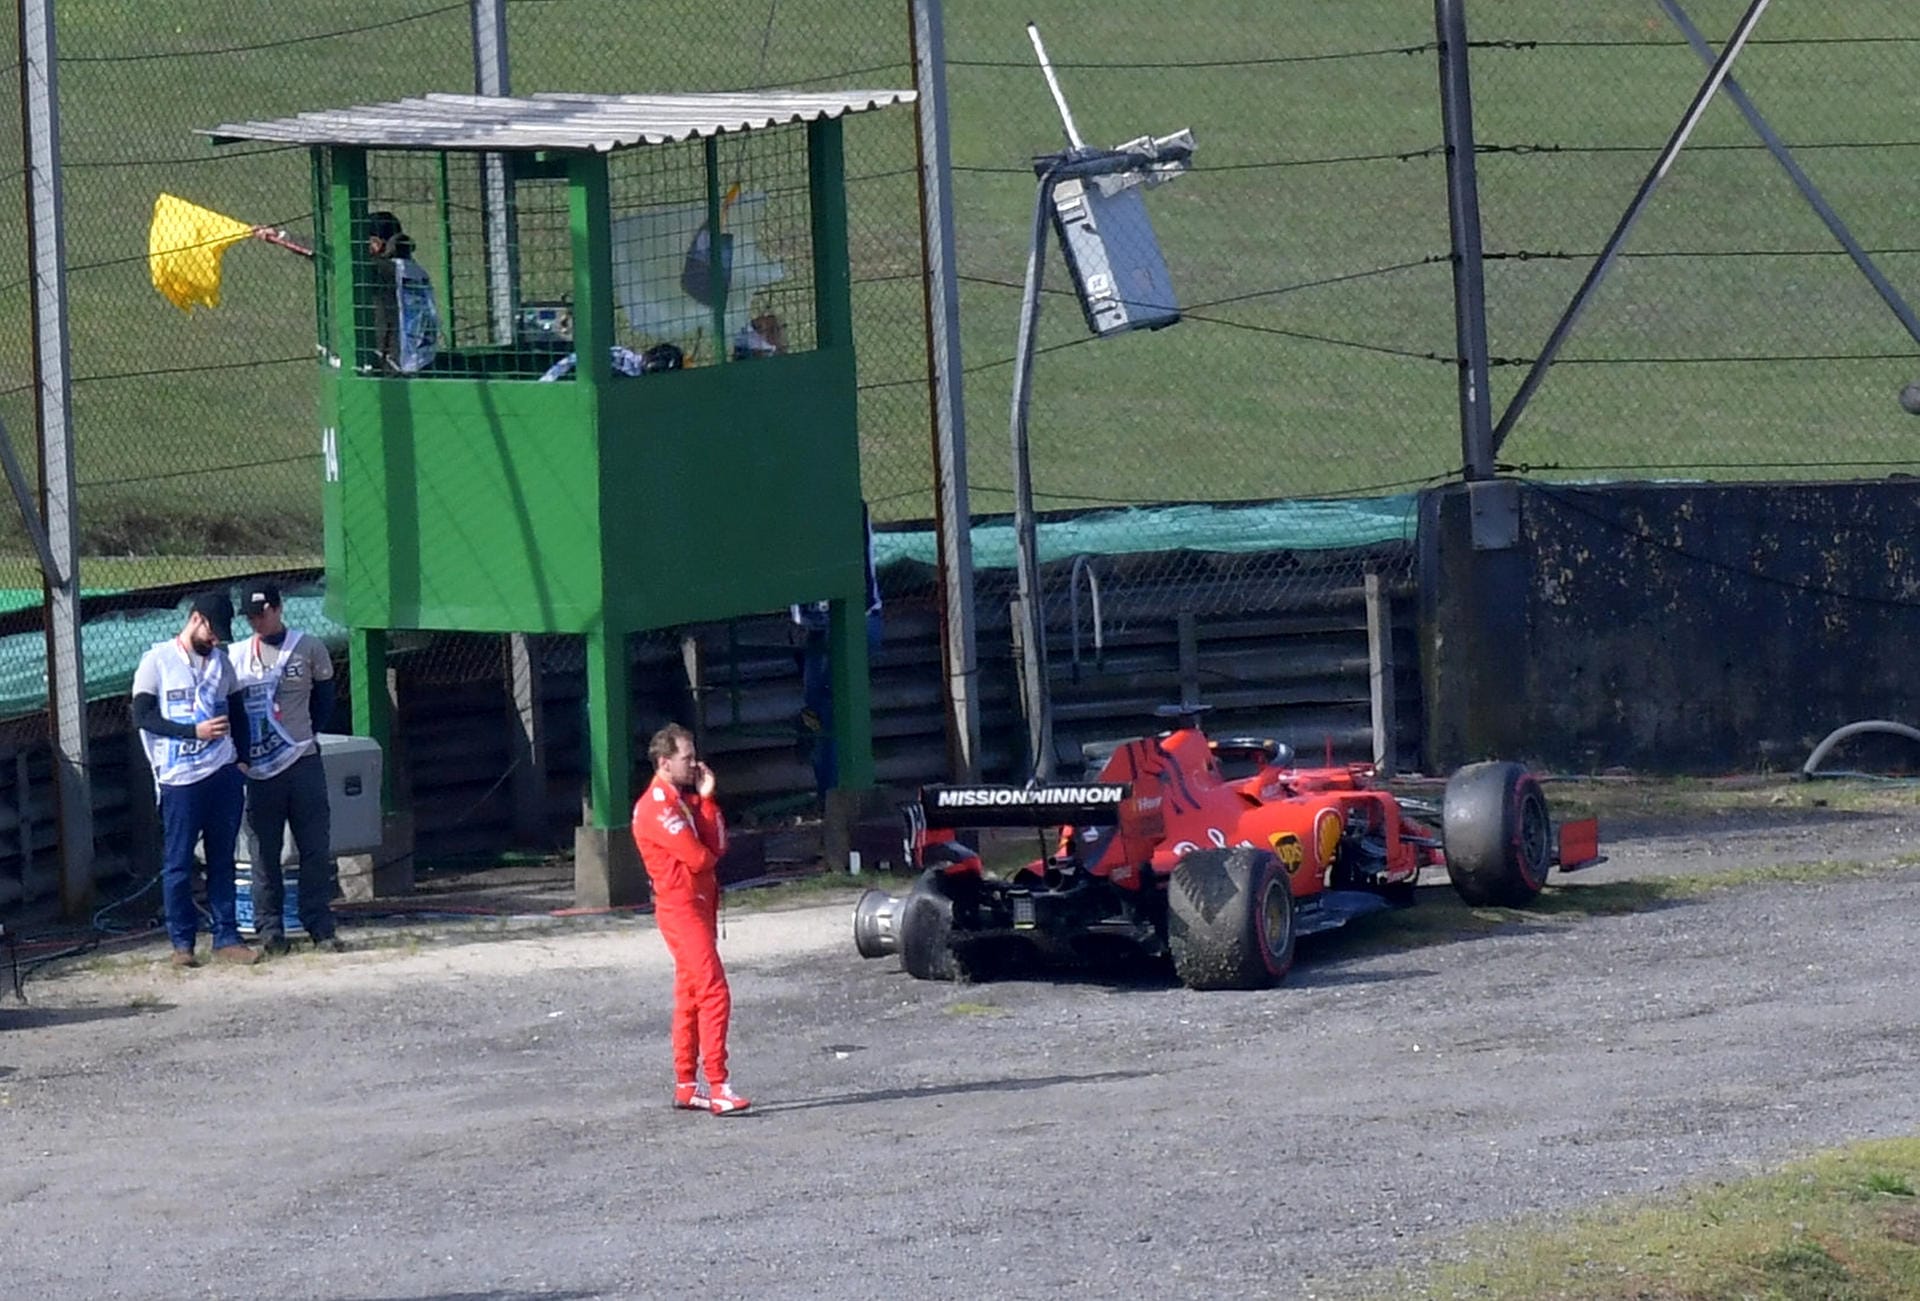 Beim Großen Preis von Brasilien kam es zwischen den Ferrari-Piloten Sebastian Vettel und Charles Leclerc fünf Runden vor Schluss zur Kollision. Während Ferrari sich selbst zerstörte, triumphierte Verstappen. t-online.de hat die internationalen Pressestimen zum Ferrari-Crash zusammengestellt.